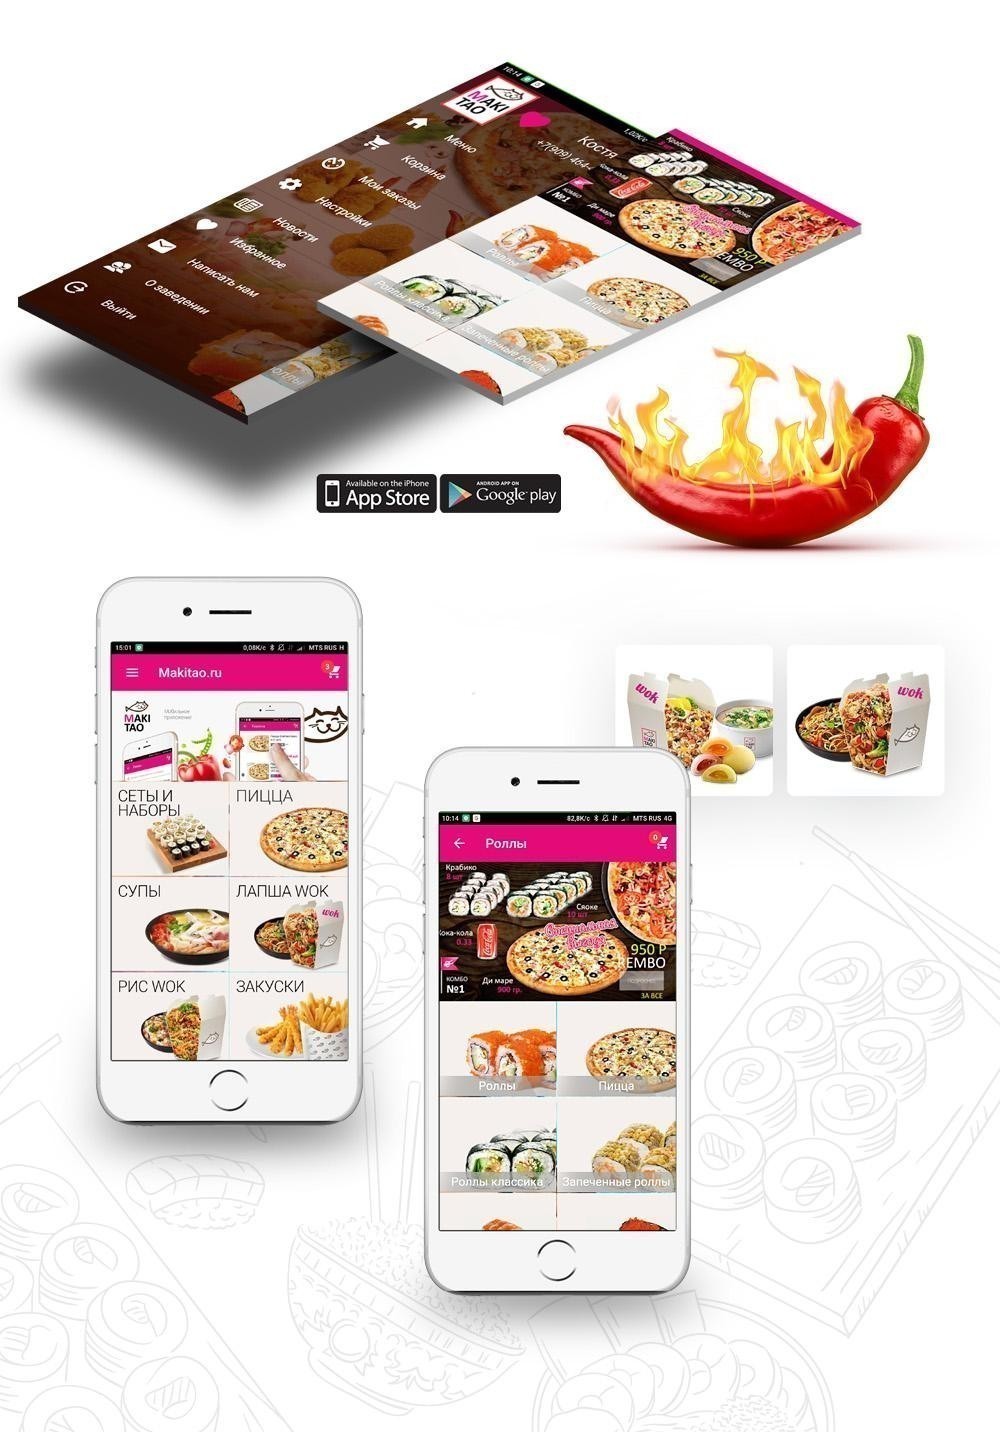 Мультирегиональное мобильное приложение для сетей доставки еды и ресторанов, разработка сайтов Москв